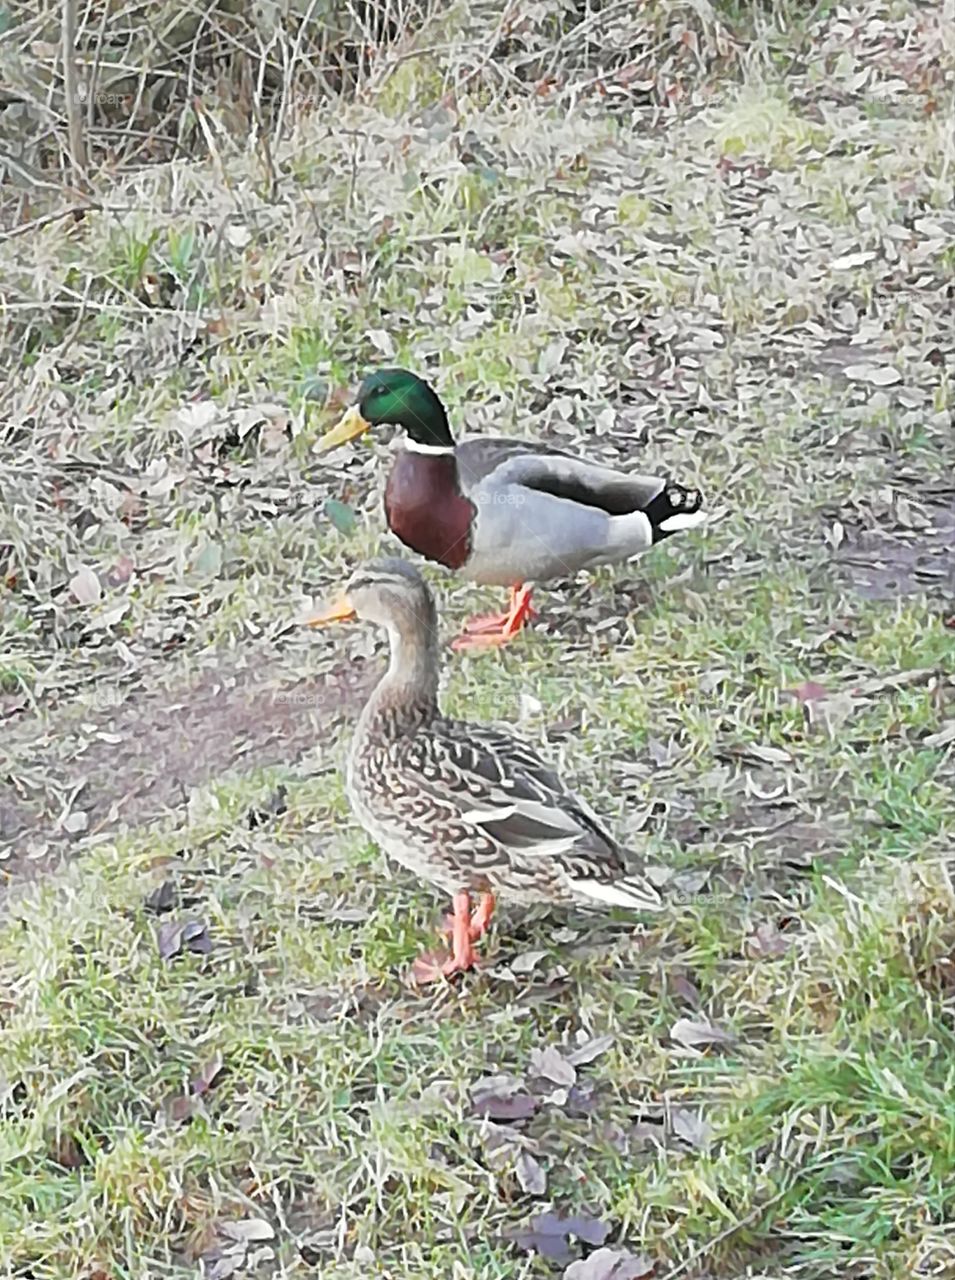 Two ducks 🦆